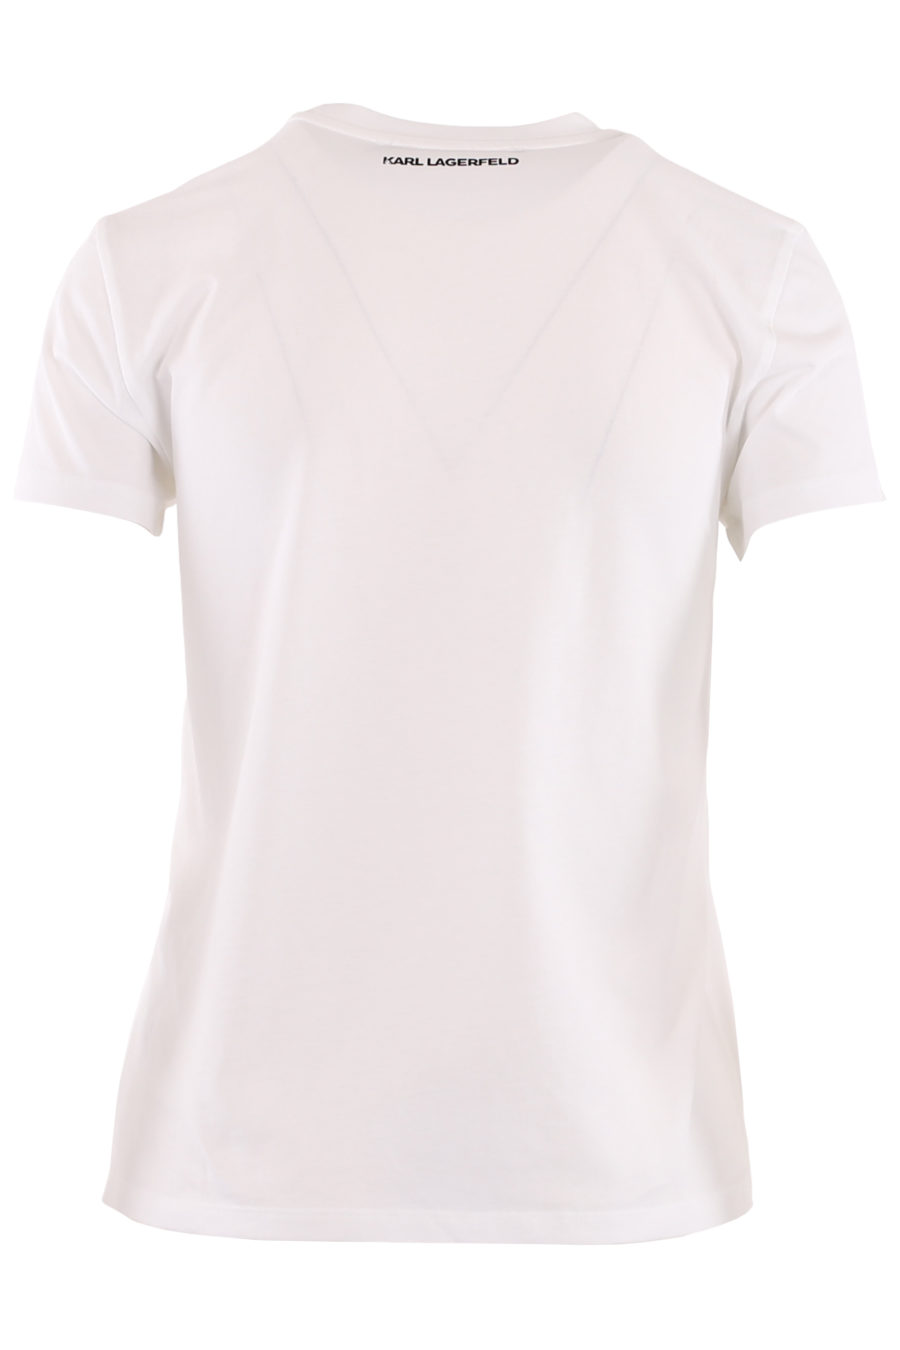 Camiseta blanca con "Karl" brillante - 6dfceeb19c7a4be8f23ec5138036b5ffaad3ba4a